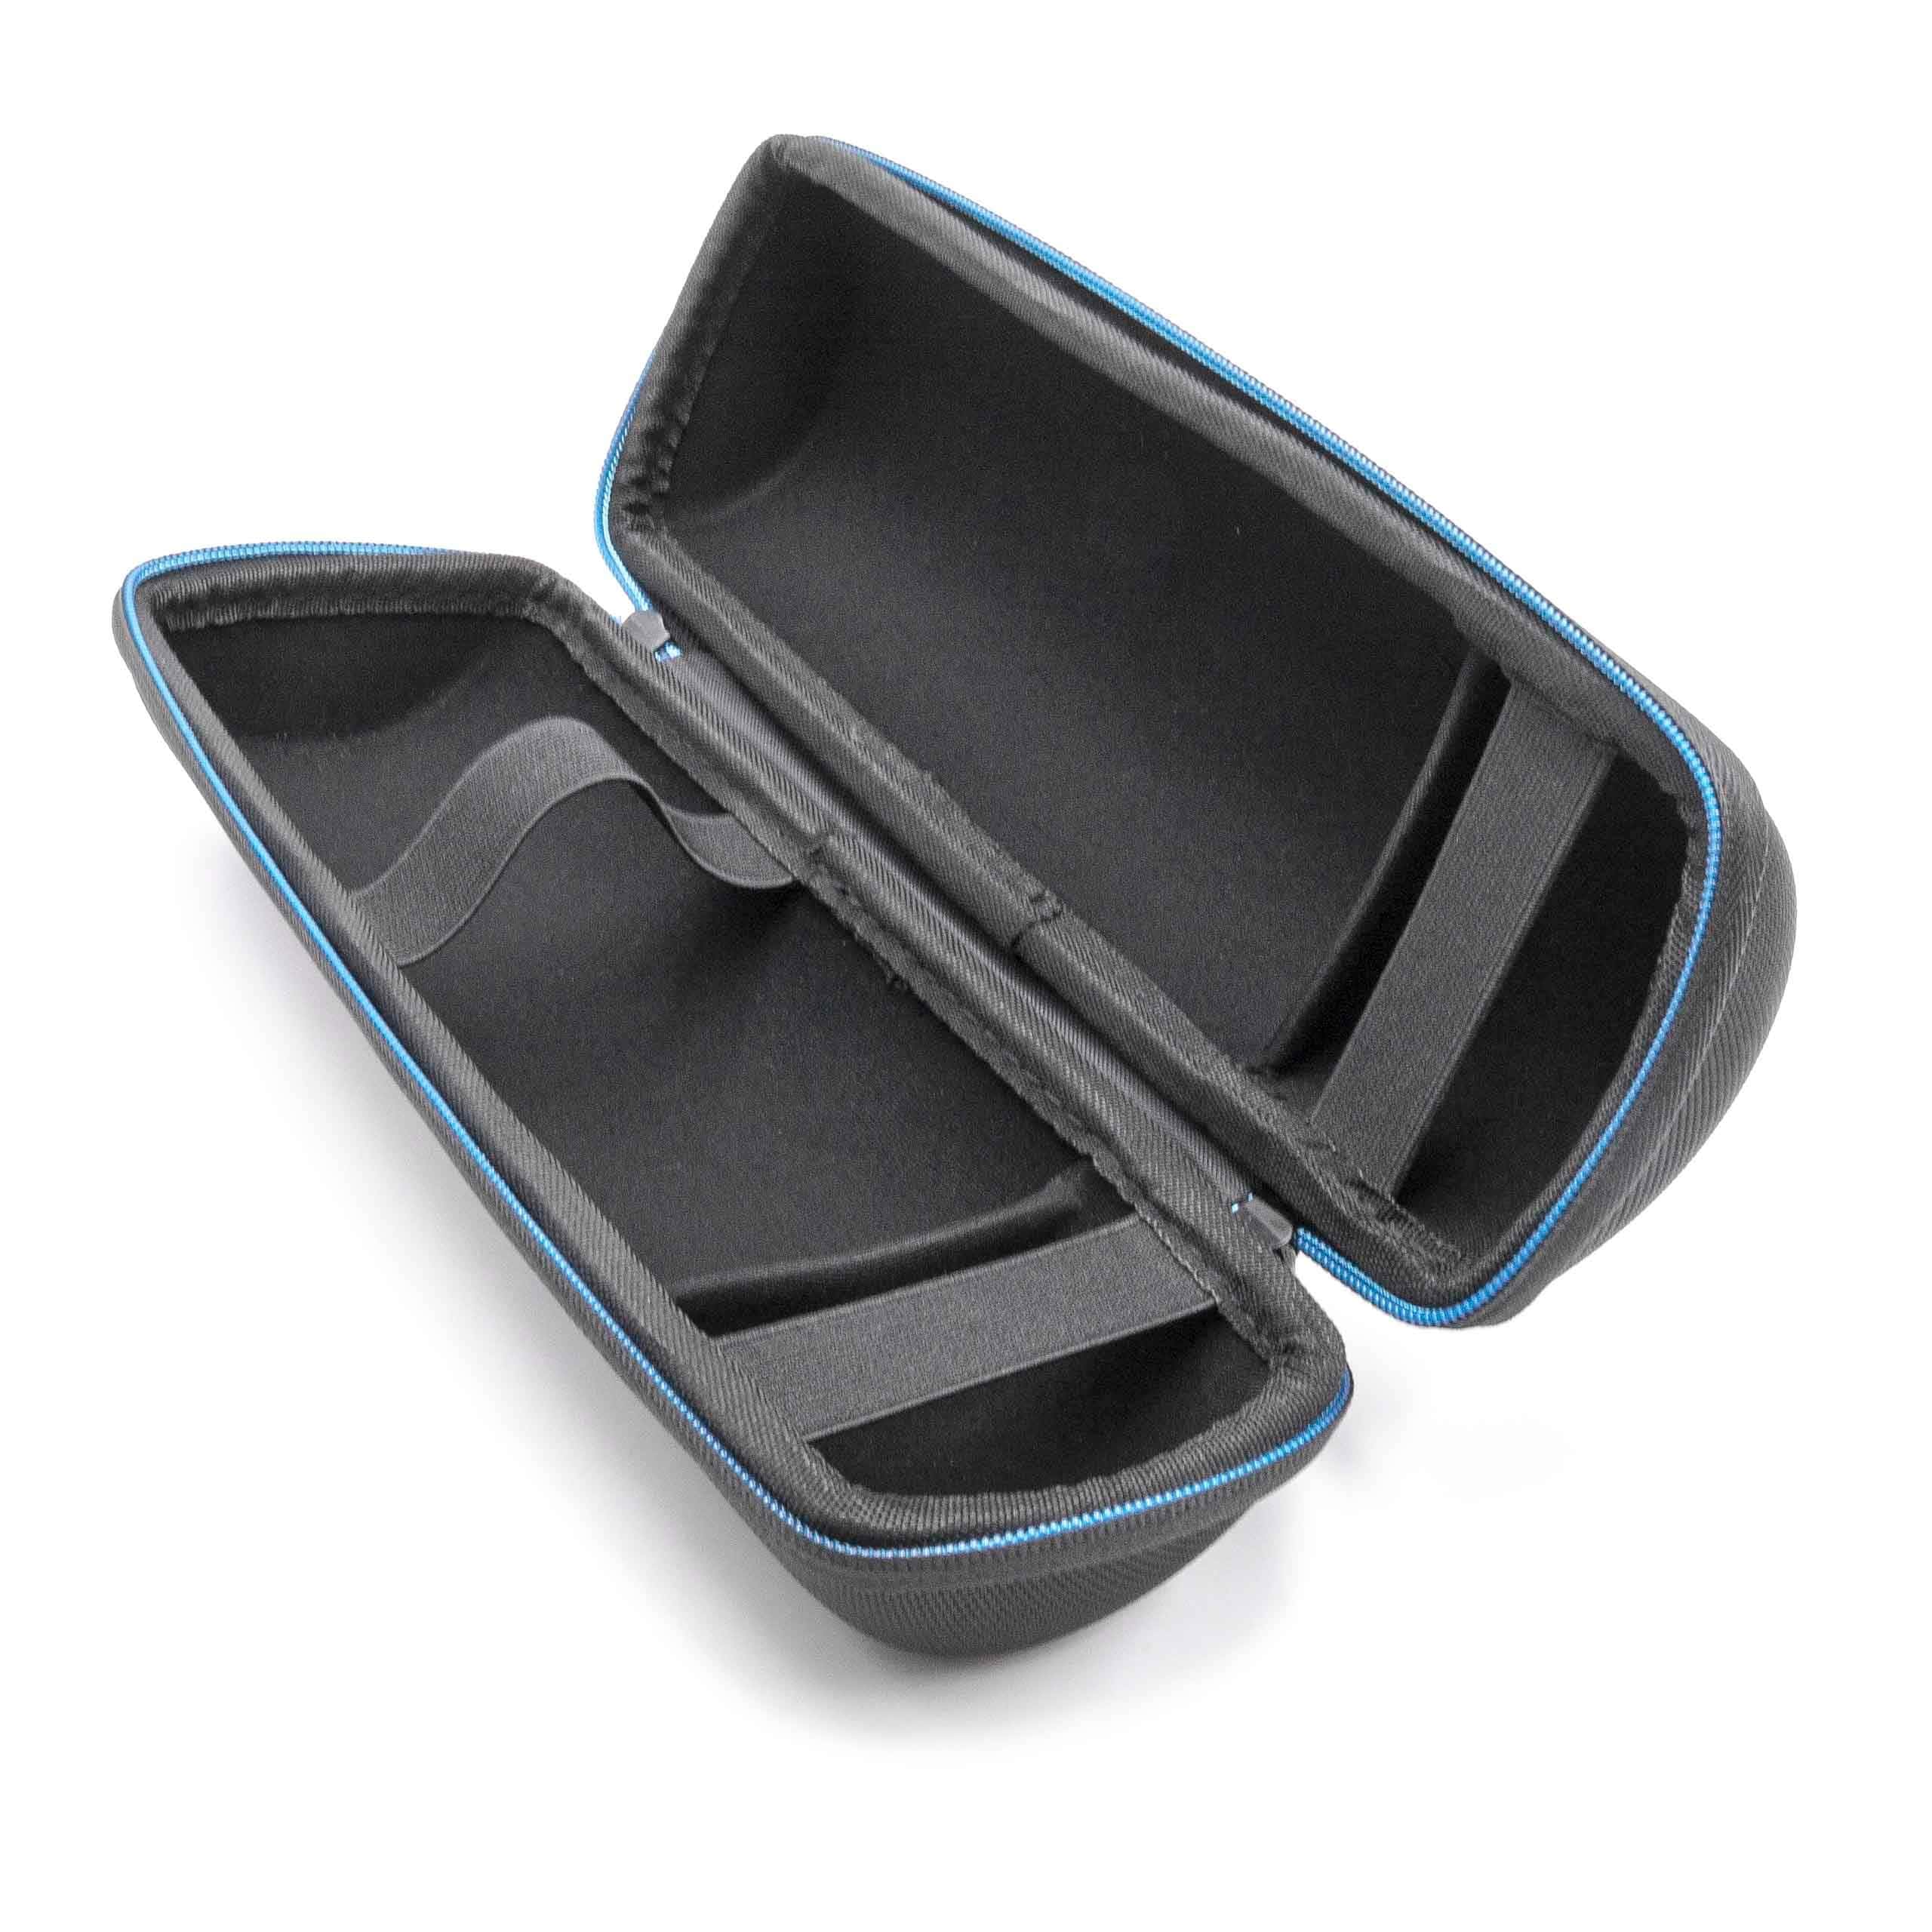 Tasche passend für JBL Flip 4, 1, 2, 3 Lautsprecher - Ethylenvinylacetat (EVA), Baumwolle, Schwarz, Mit Trageg